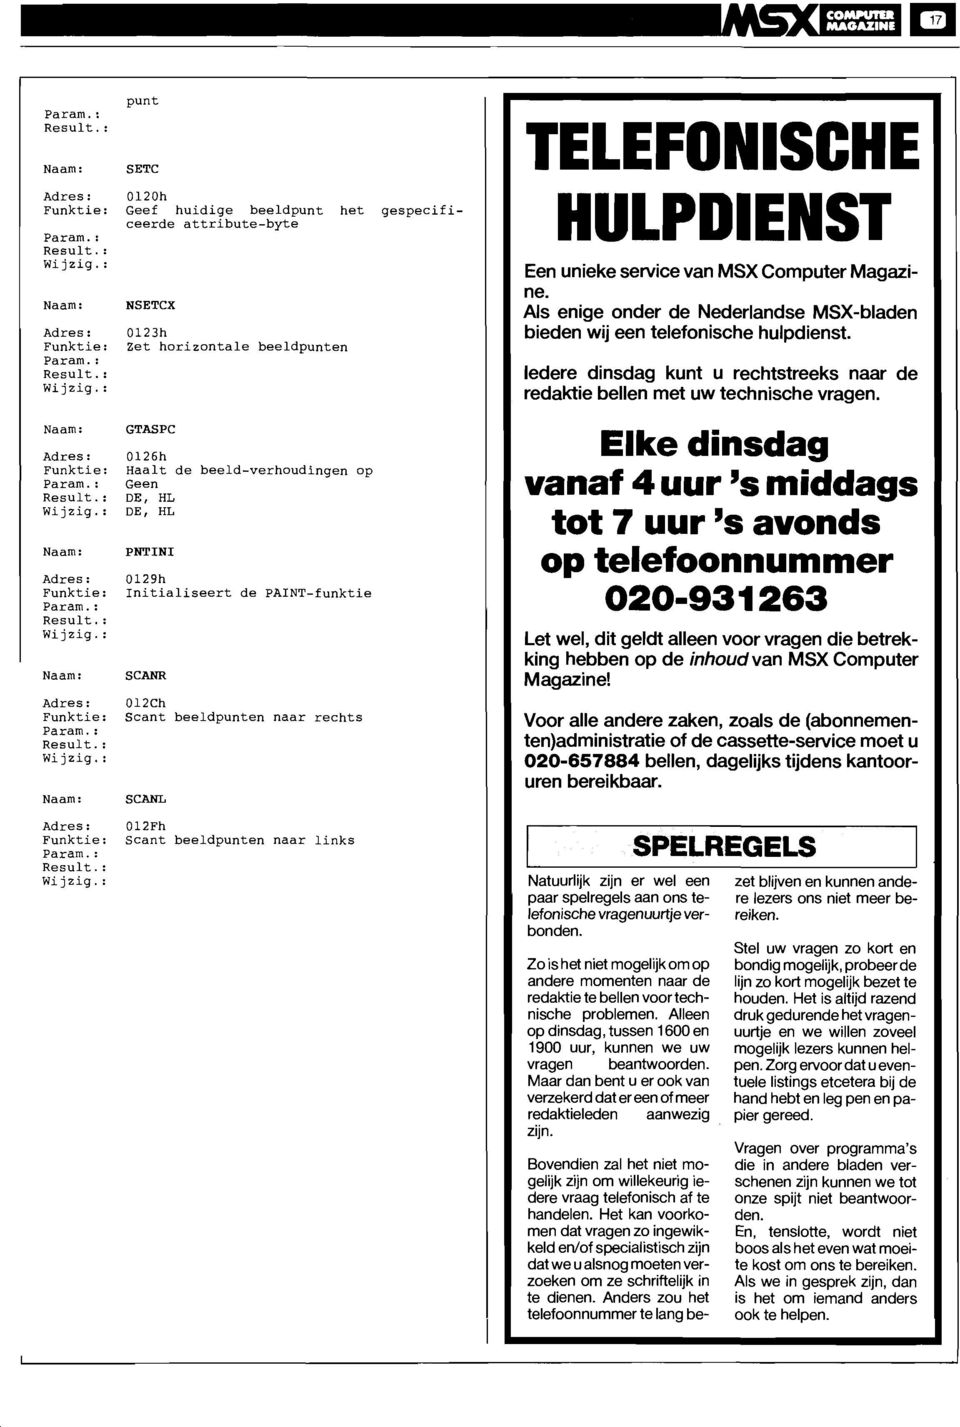 012Fh Scant beeldpunten naar links TELEFONISCHE HULPDIENST Een unieke service van MSX Computer Magazine. Als enige onder de Nederlandse MSX-bladen bieden wij een telefonische hulpdienst.